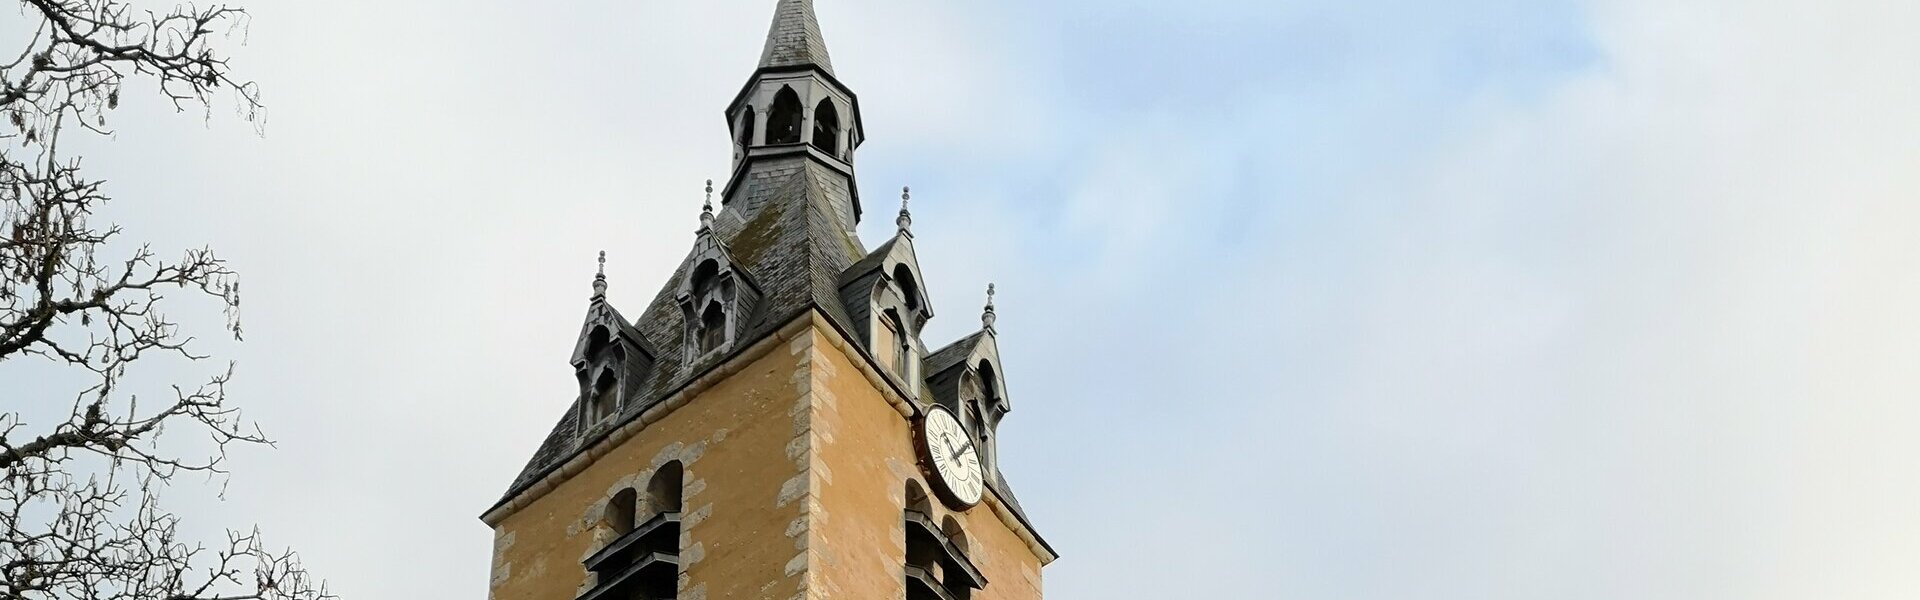 Mairie de Chateau-Renard - dans le Loiret - 45